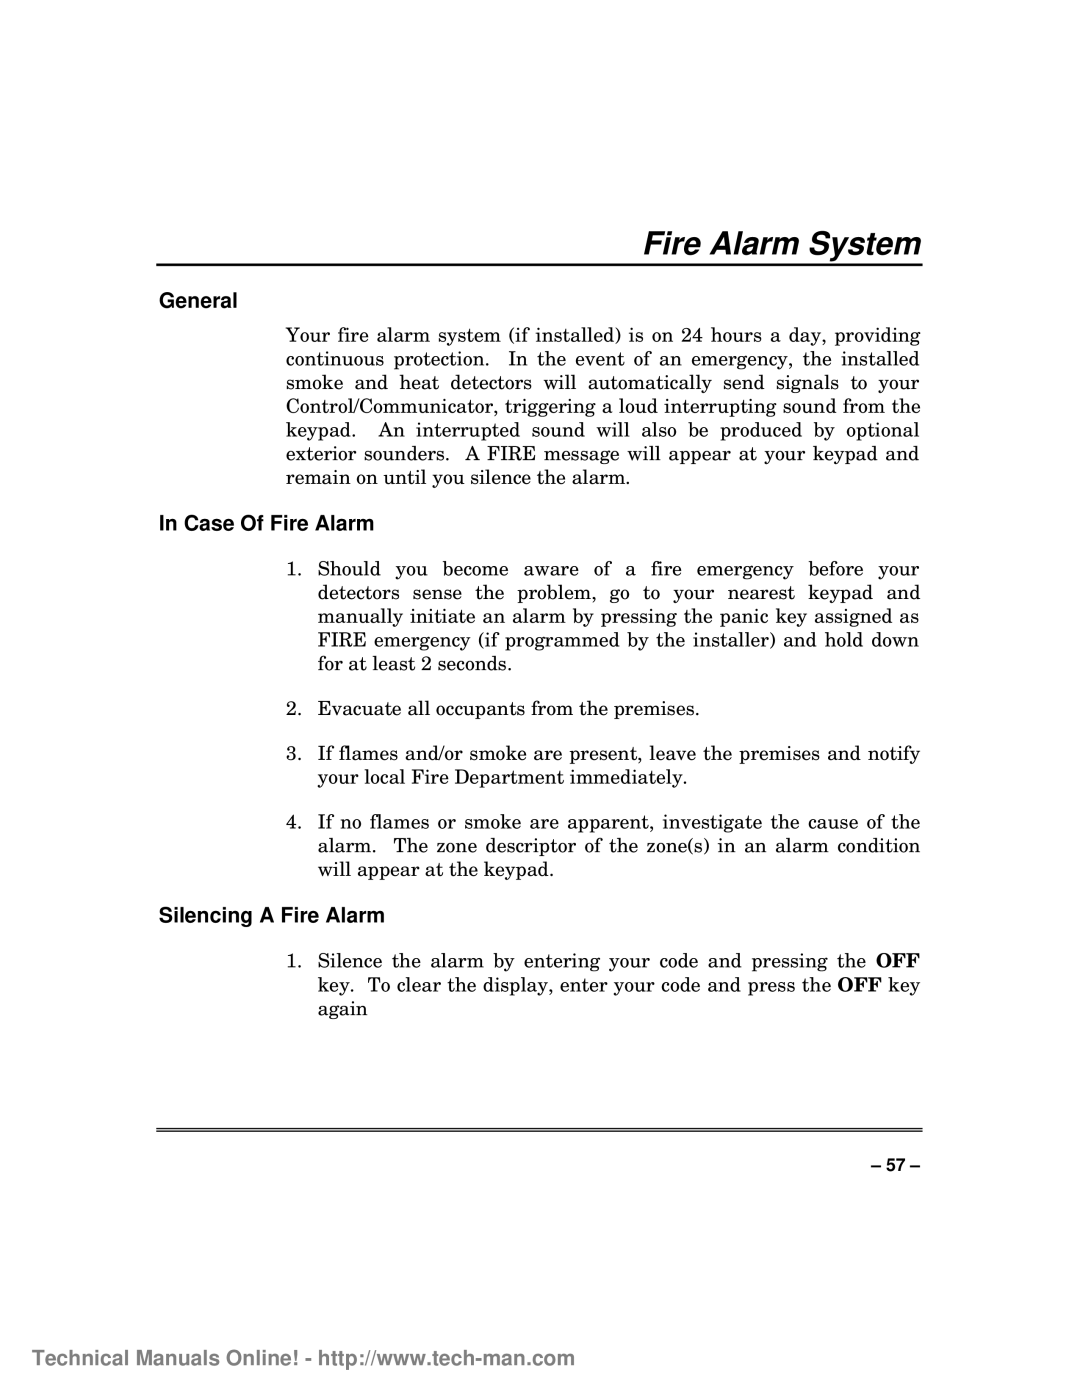 First Alert FA1600C/CA/CB, fa1600c Fire Alarm System, In Case Of Fire Alarm, Silencing A Fire Alarm, General 